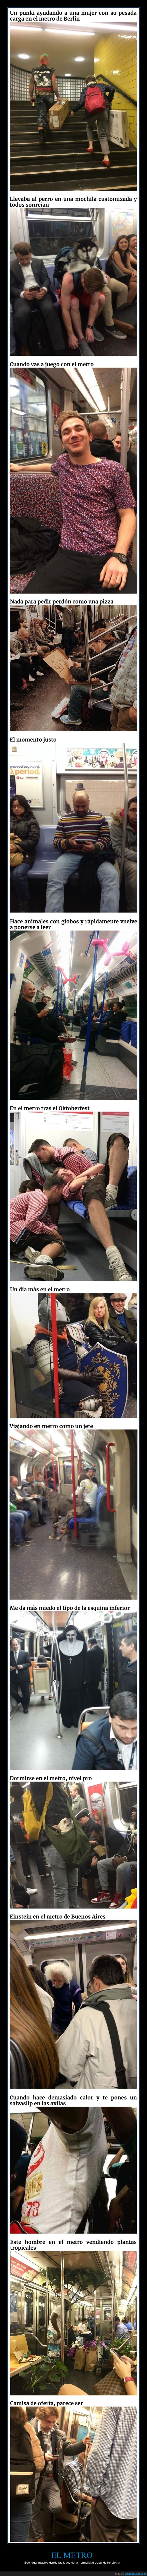 metro,wtf